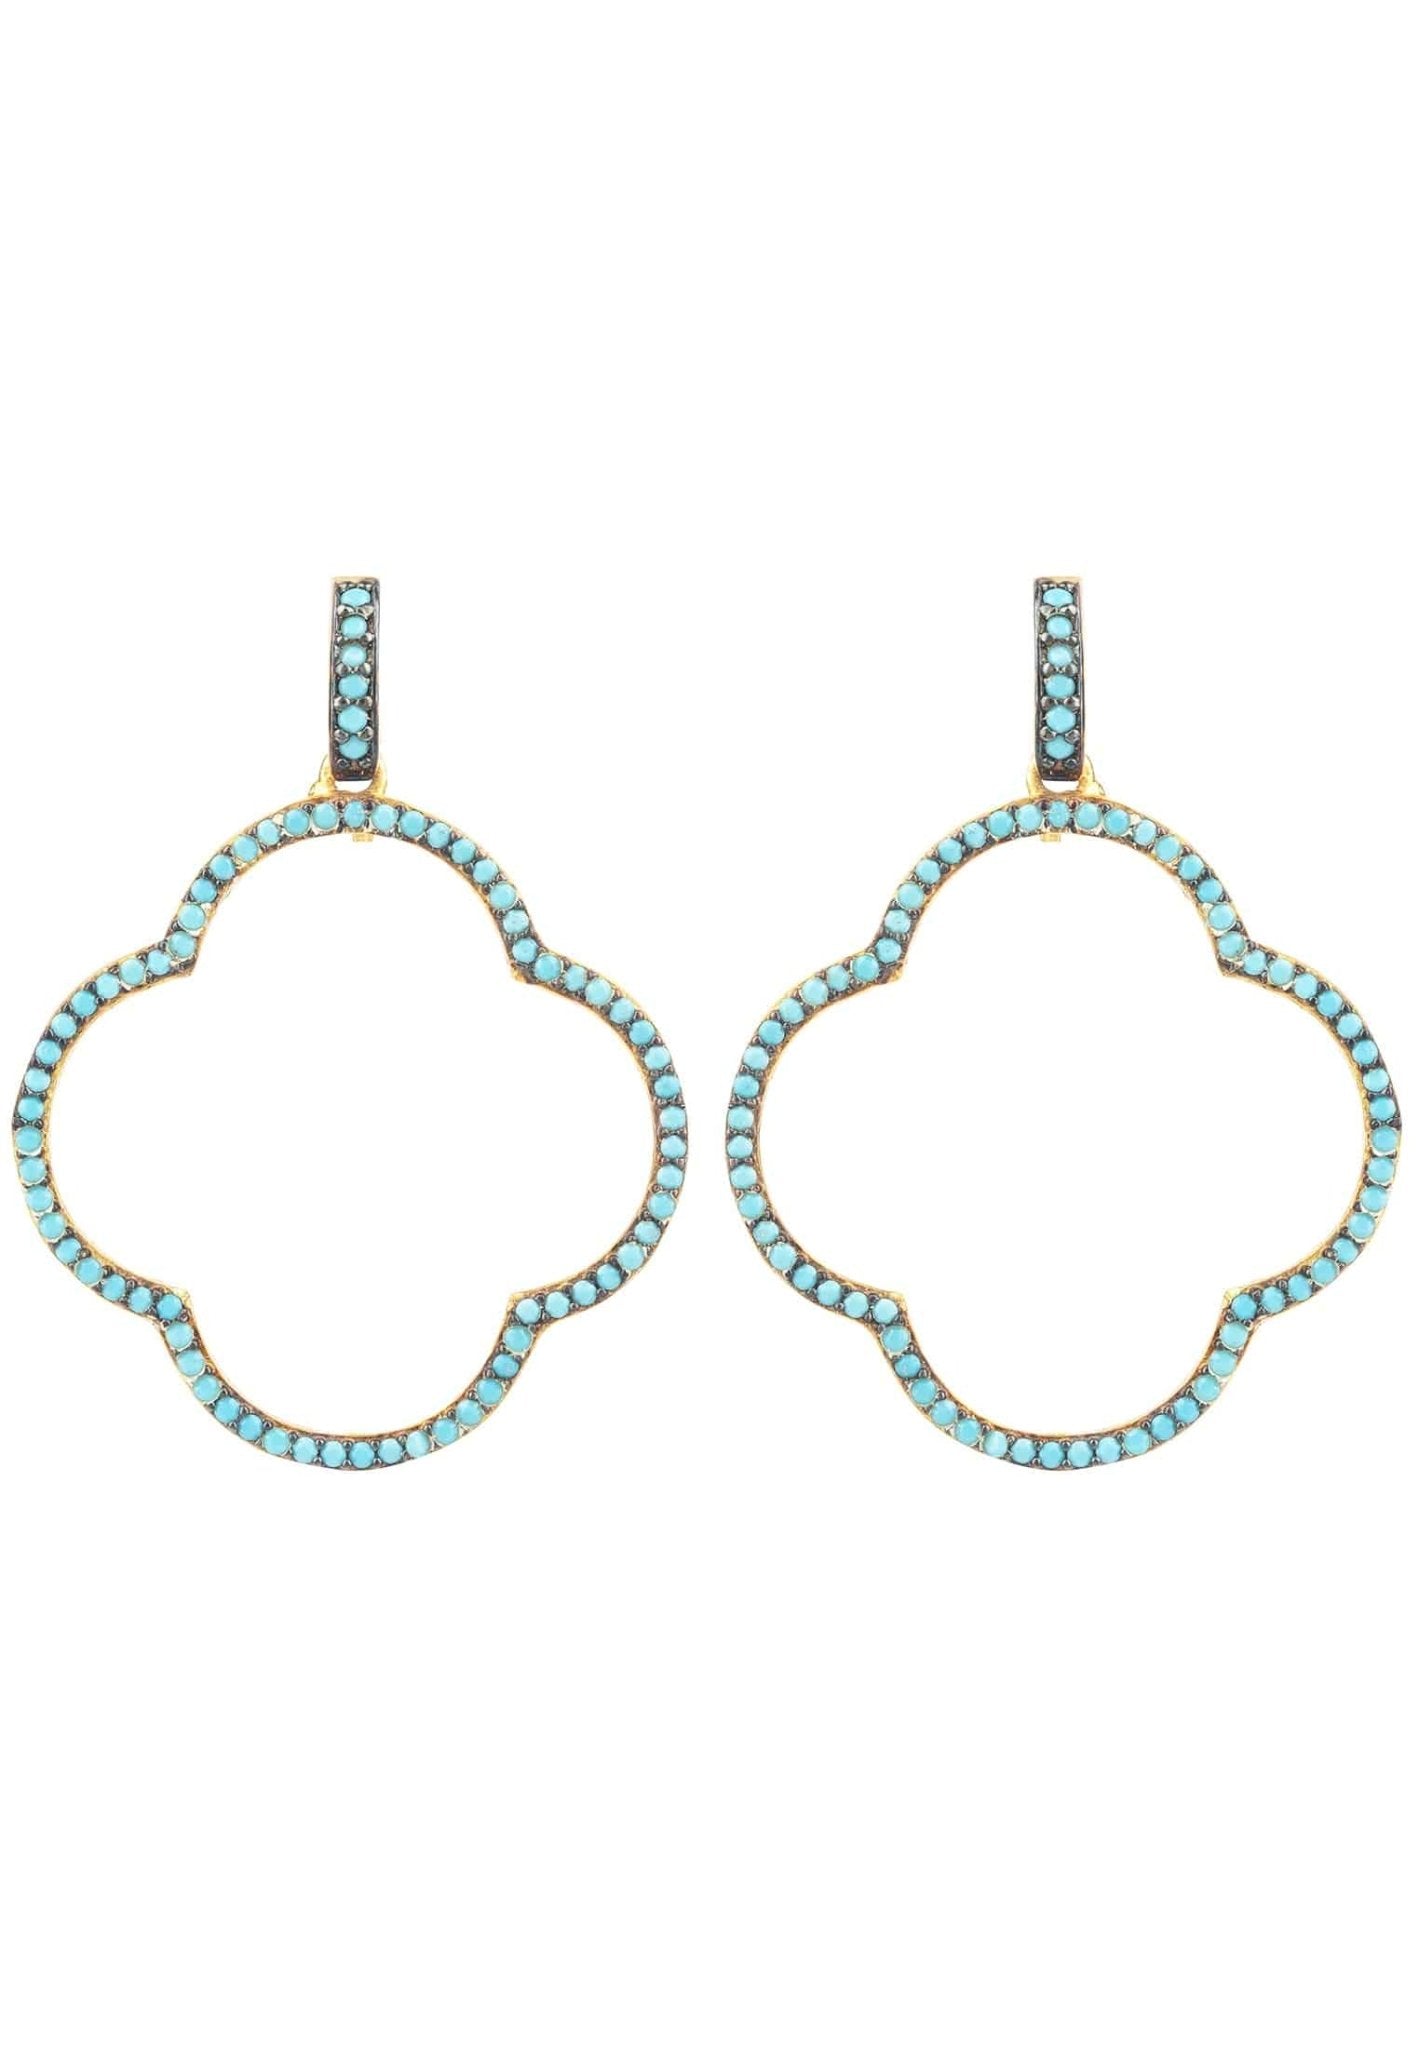 Open Clover Large Drop Earrings Gold Turquoise Blue - LATELITA Earrings